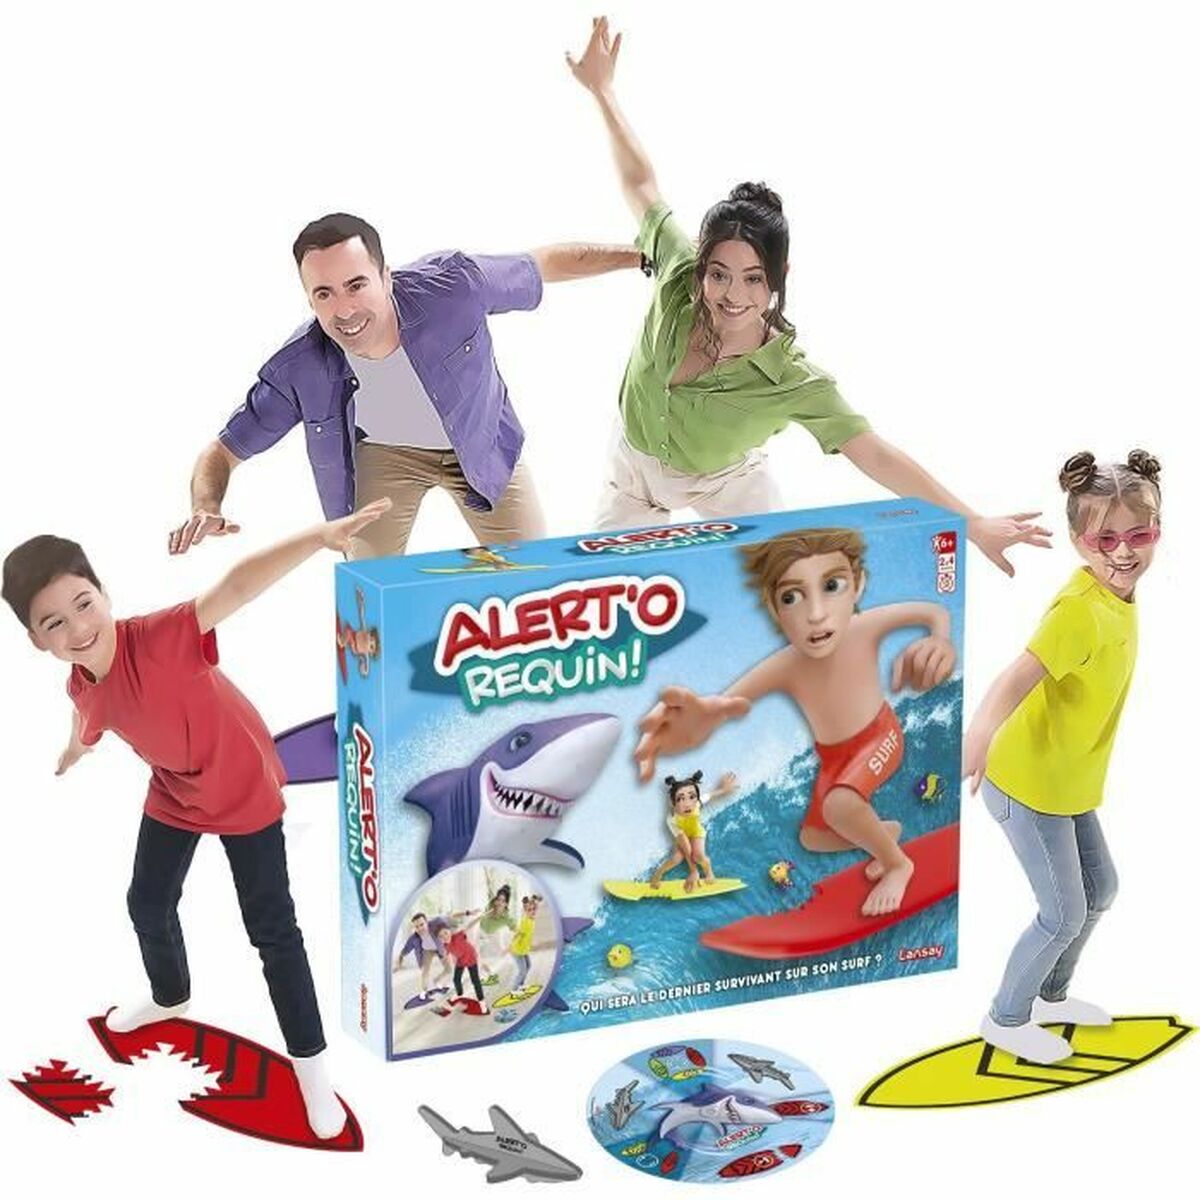 Board game Lansay Alert'o Requin! (FR) - Little Baby Shop